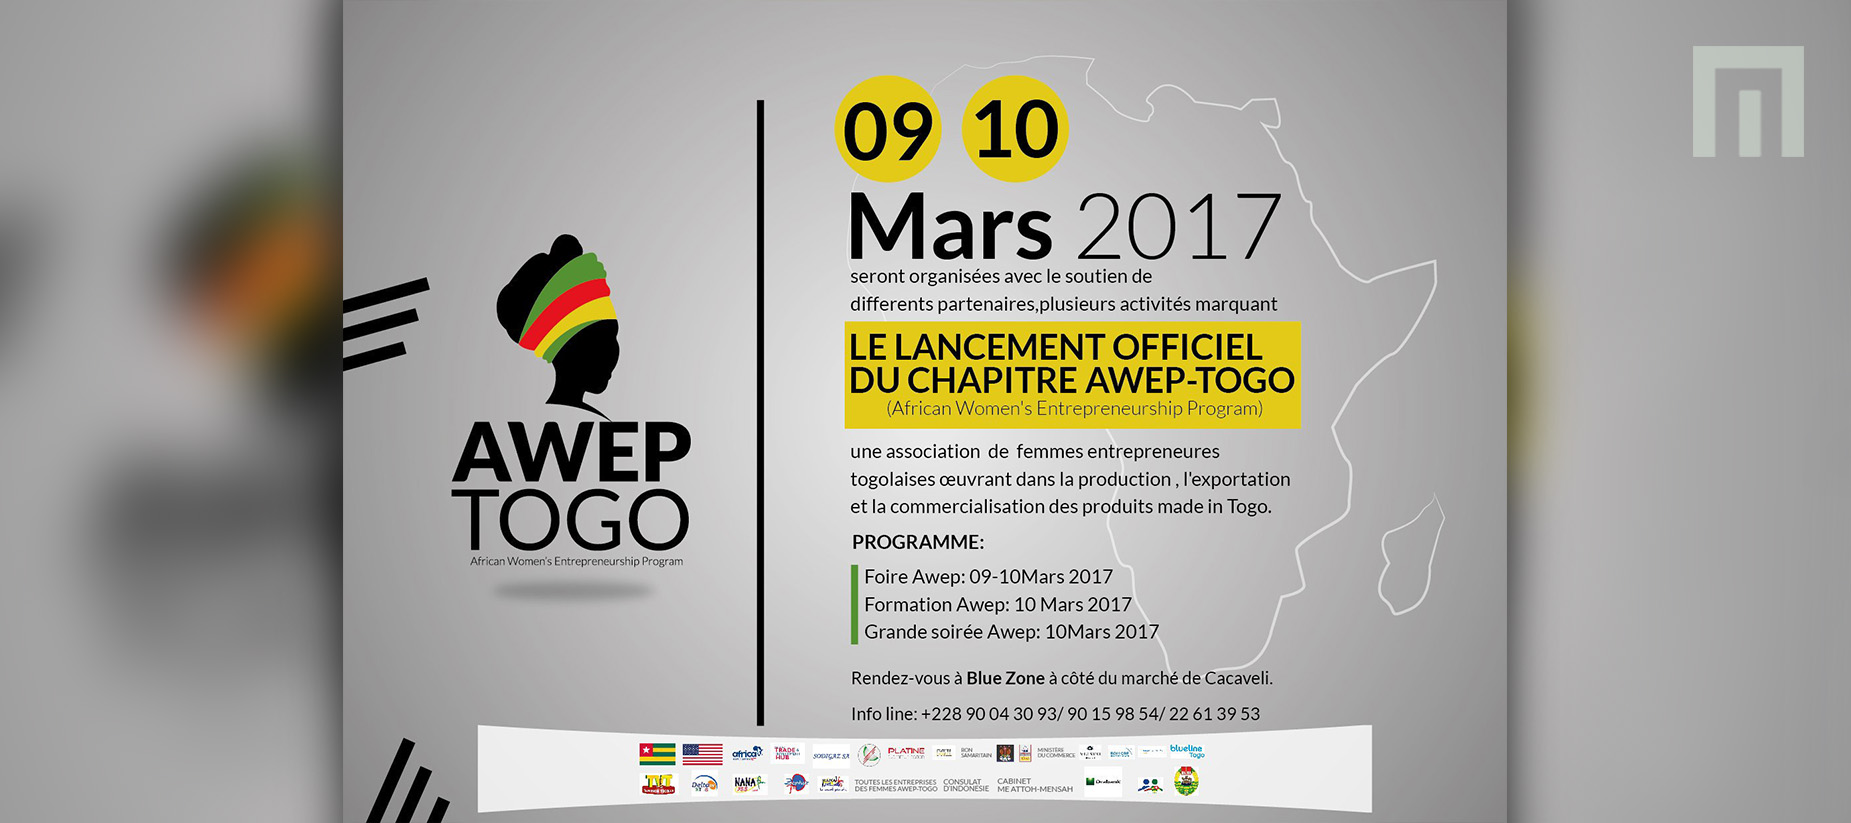 AWEP-TOGO: Lancement officiel